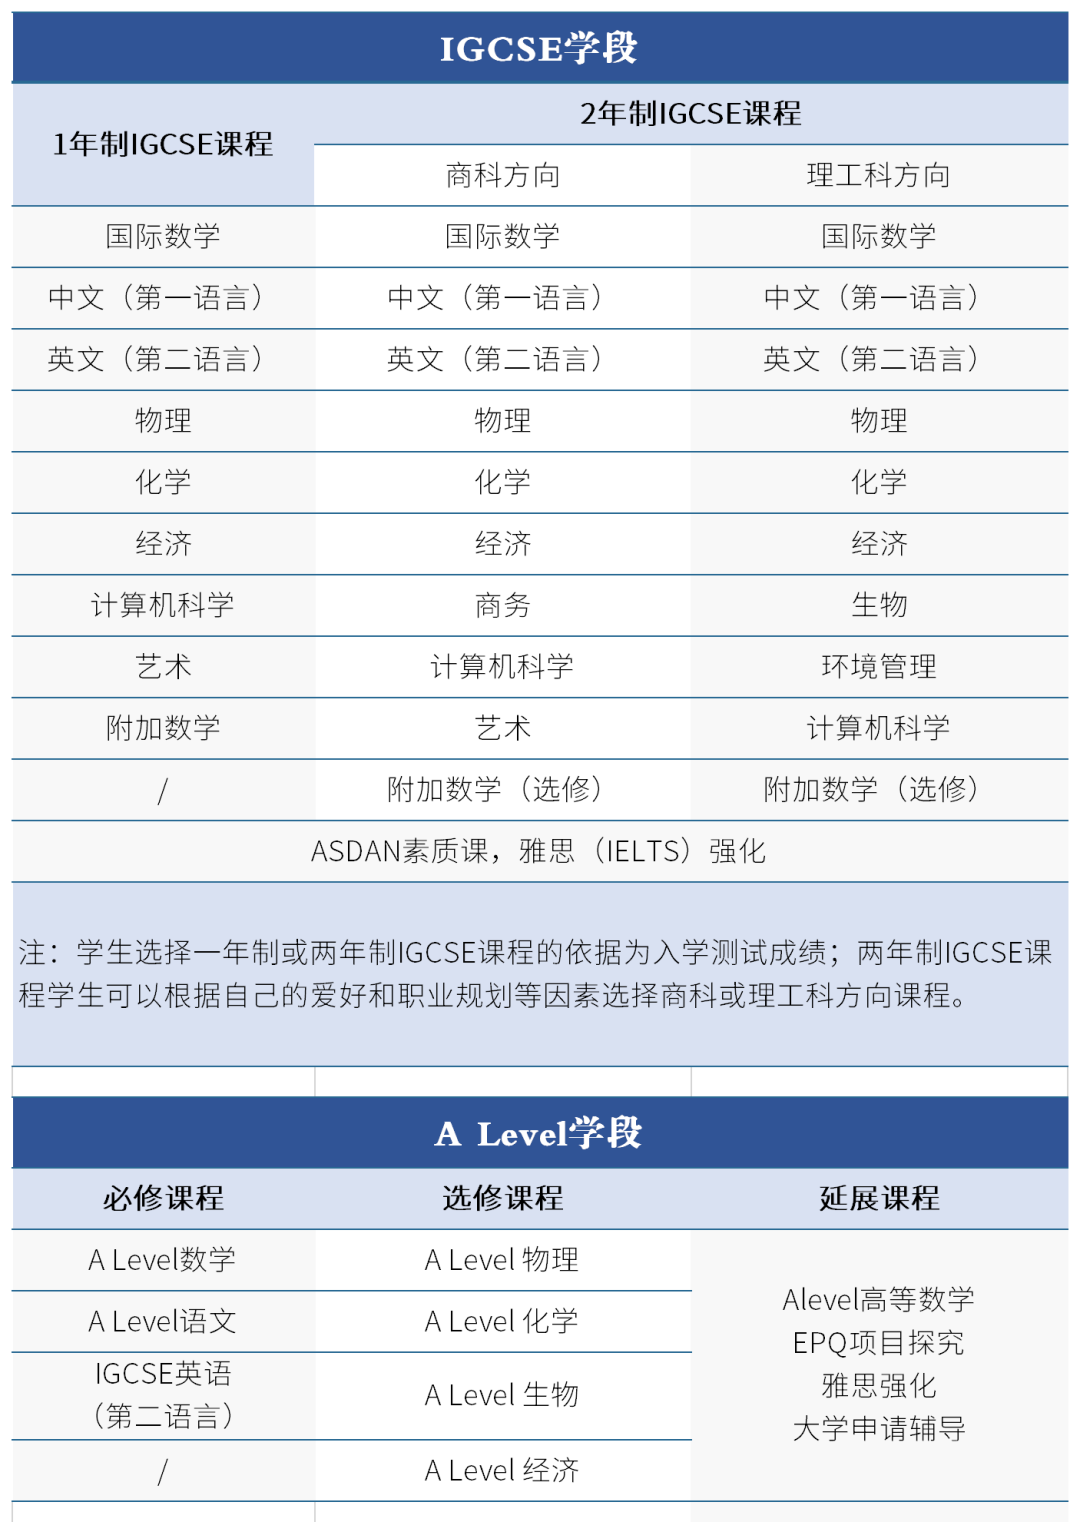 2022年博雅培文国际交流中心A-LEVEL&高中双语课程 招生信息